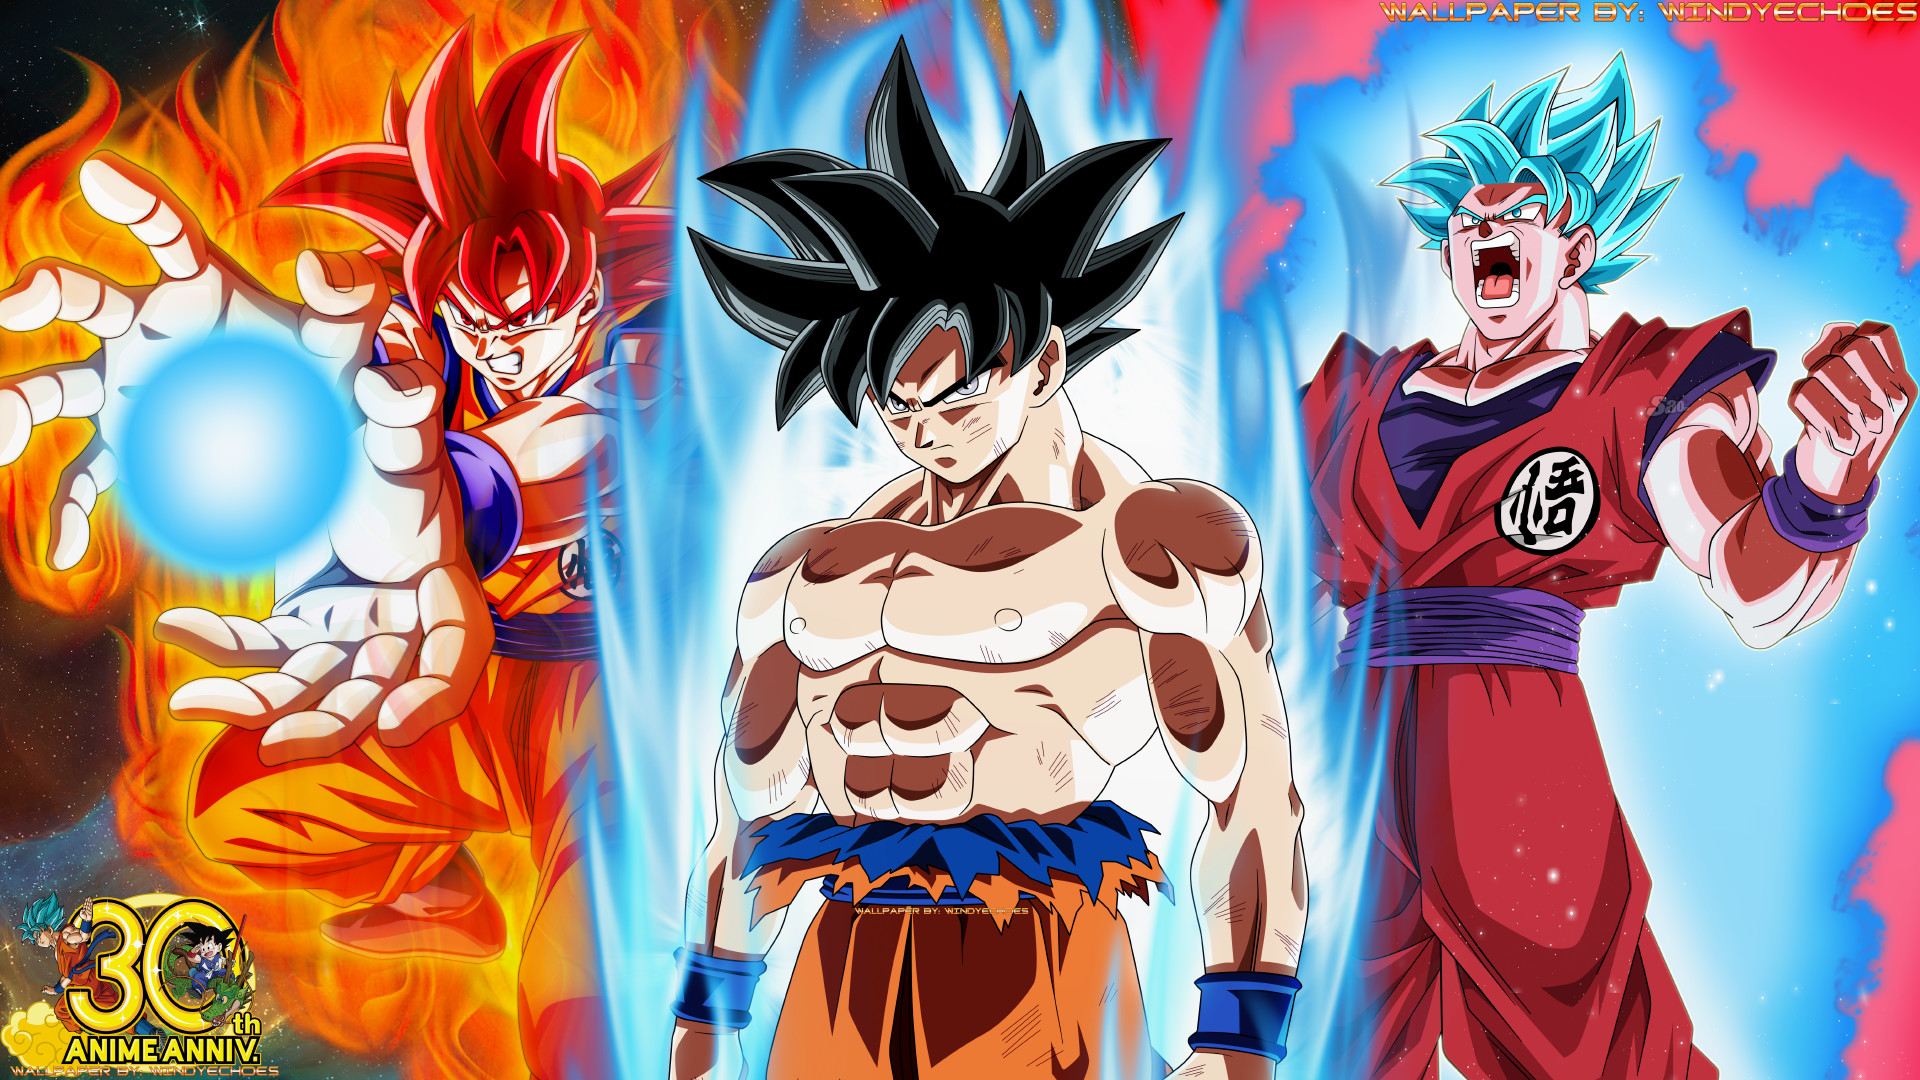 1920x1080 ... Goku Super Saiyan God - All Three Transformations by WindyEchoes